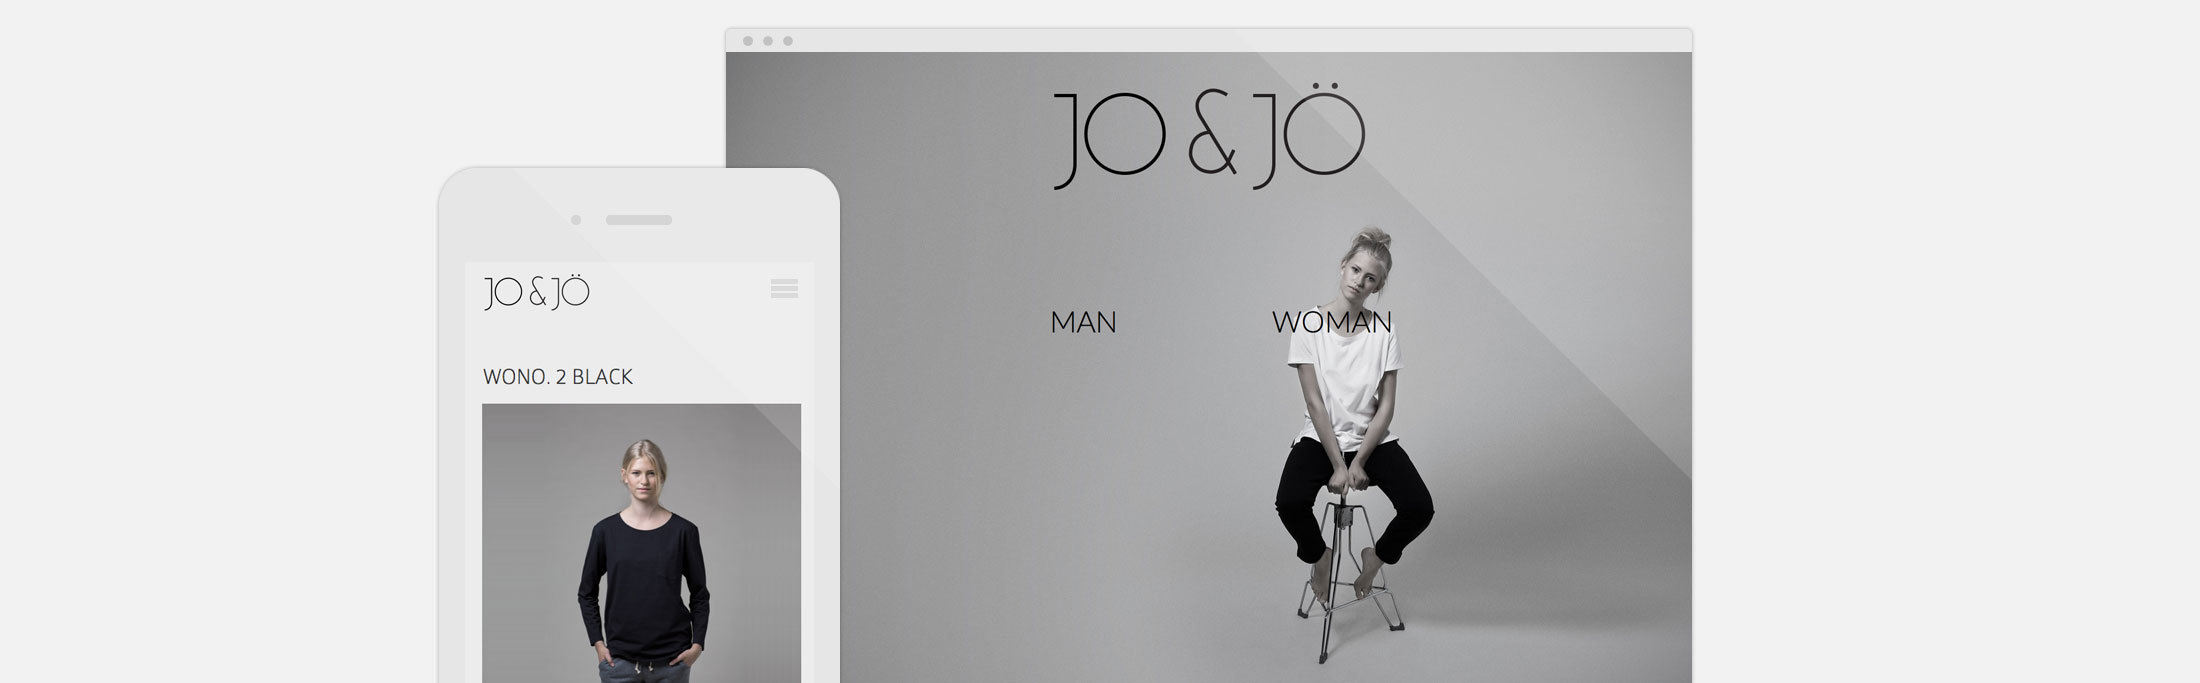 mono.net hjemmeside eksempel Jo & Jö